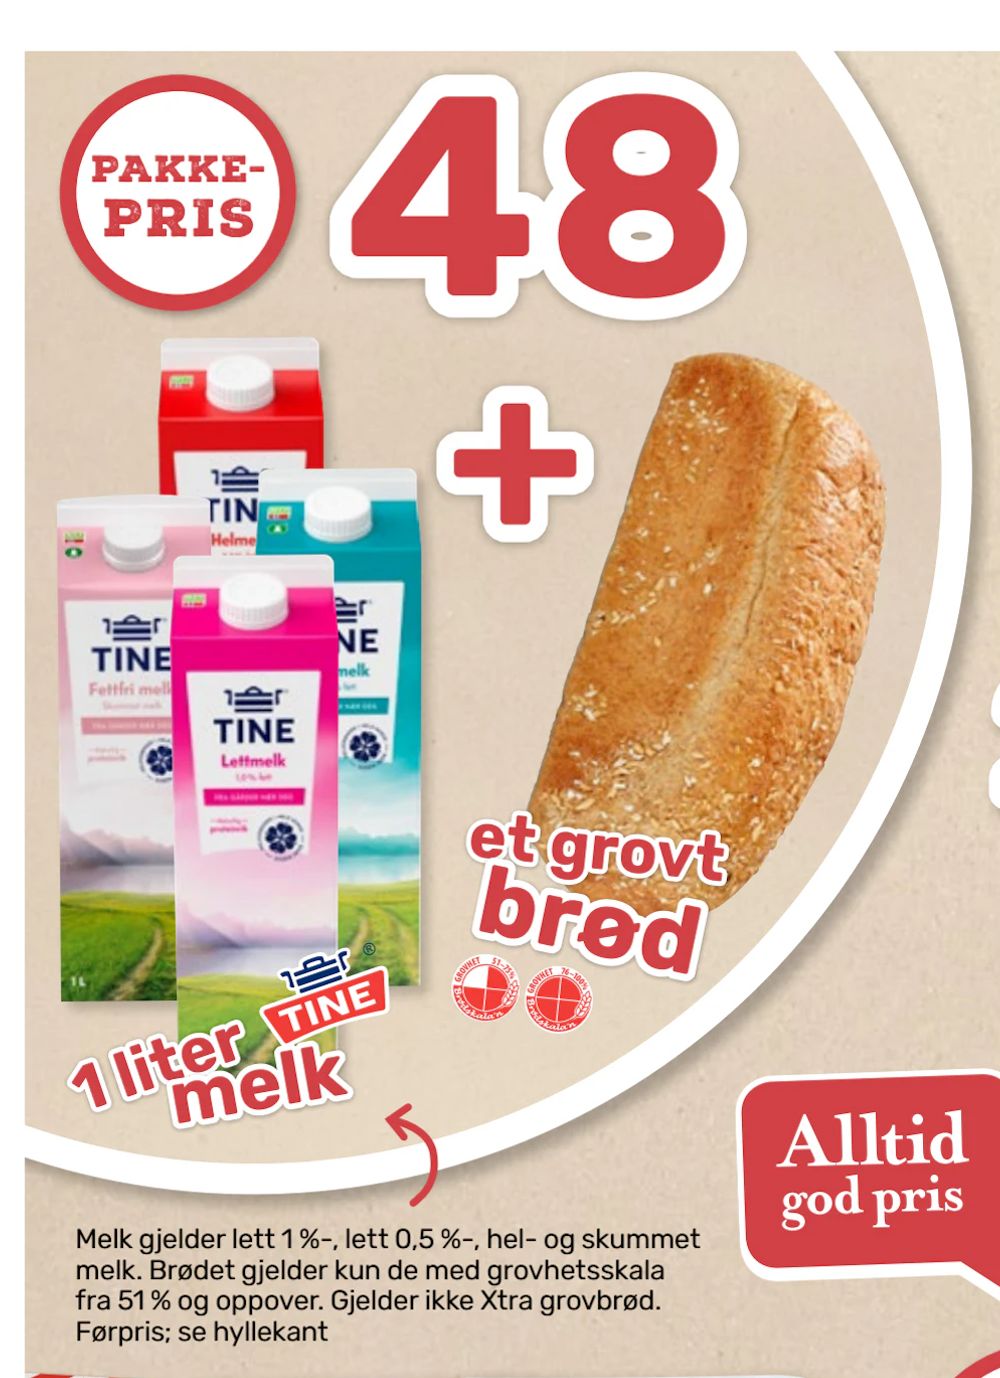 Tilbud på 1 liter Tine melk + et grovt brød fra Coop Marked til 48 kr